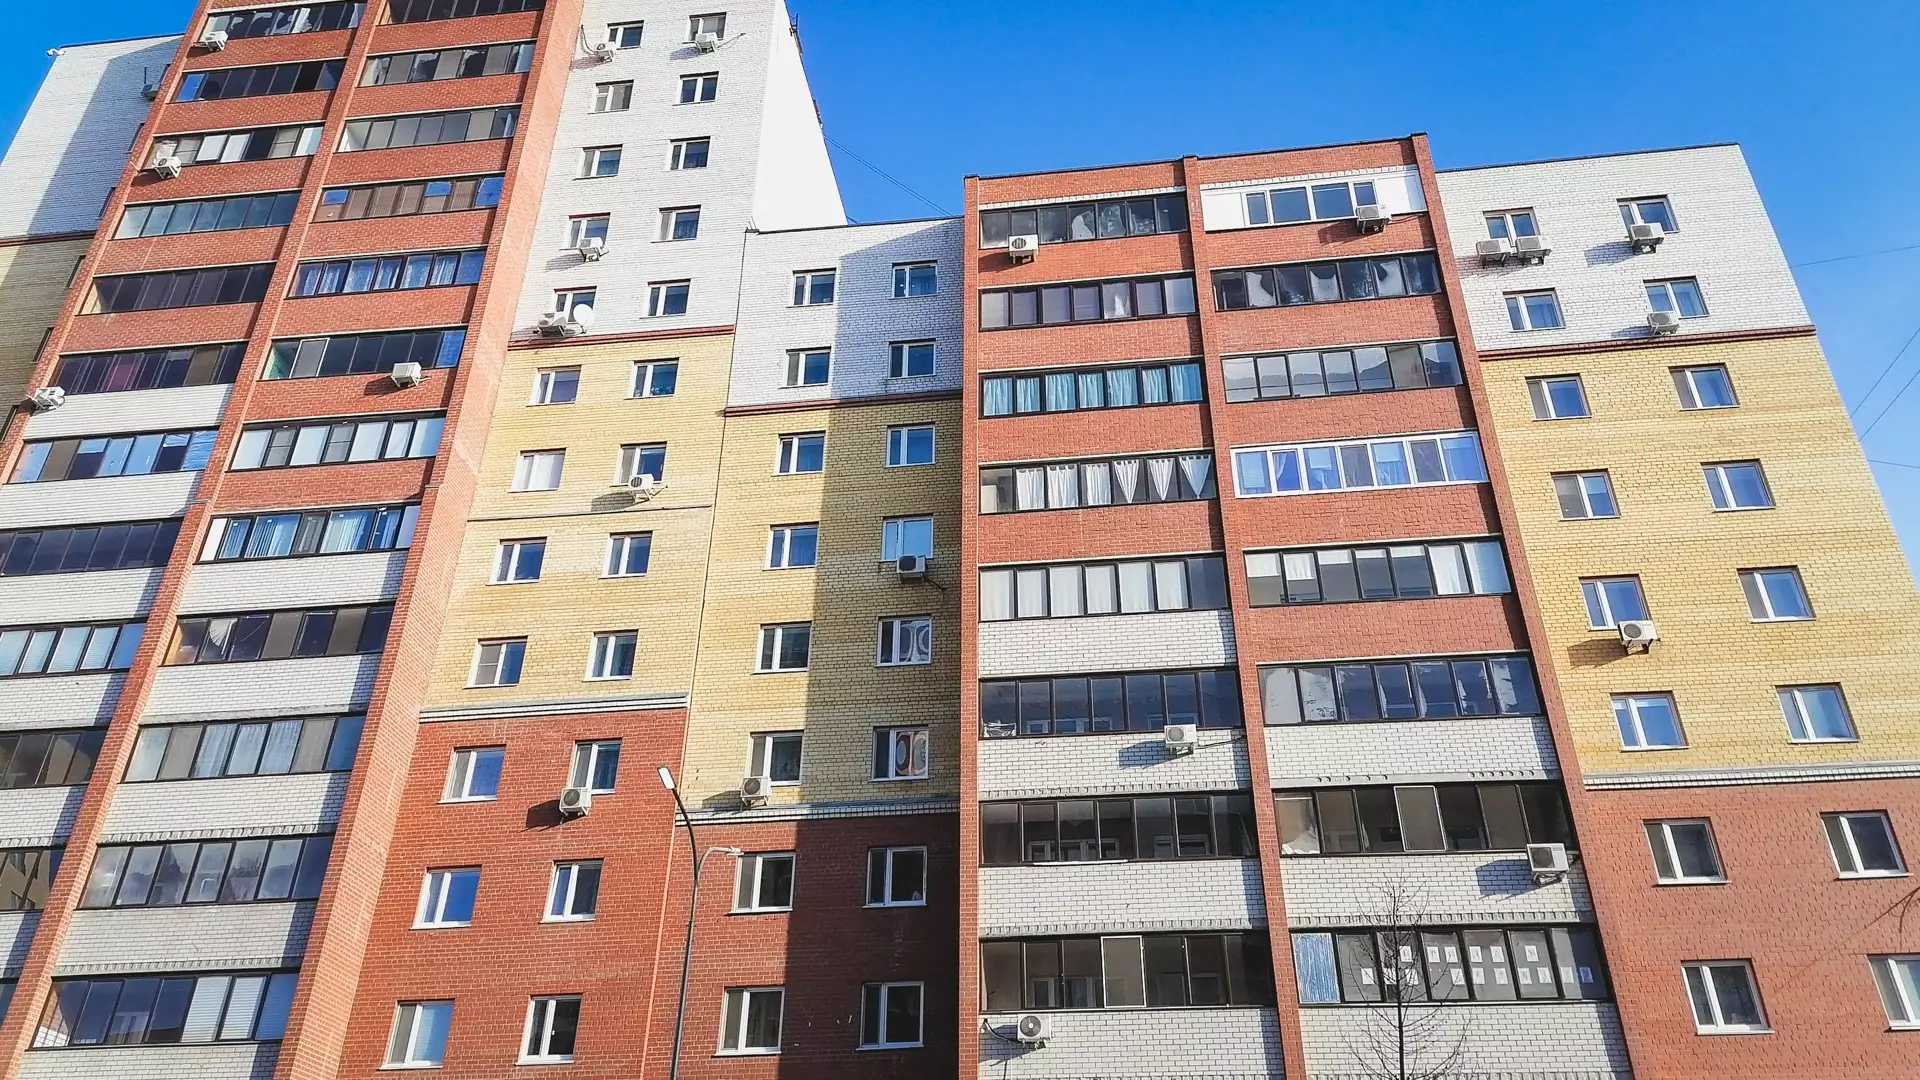 Посуточная аренда квартиры обойдется в 2500 рублей в Нижнем Новгороде